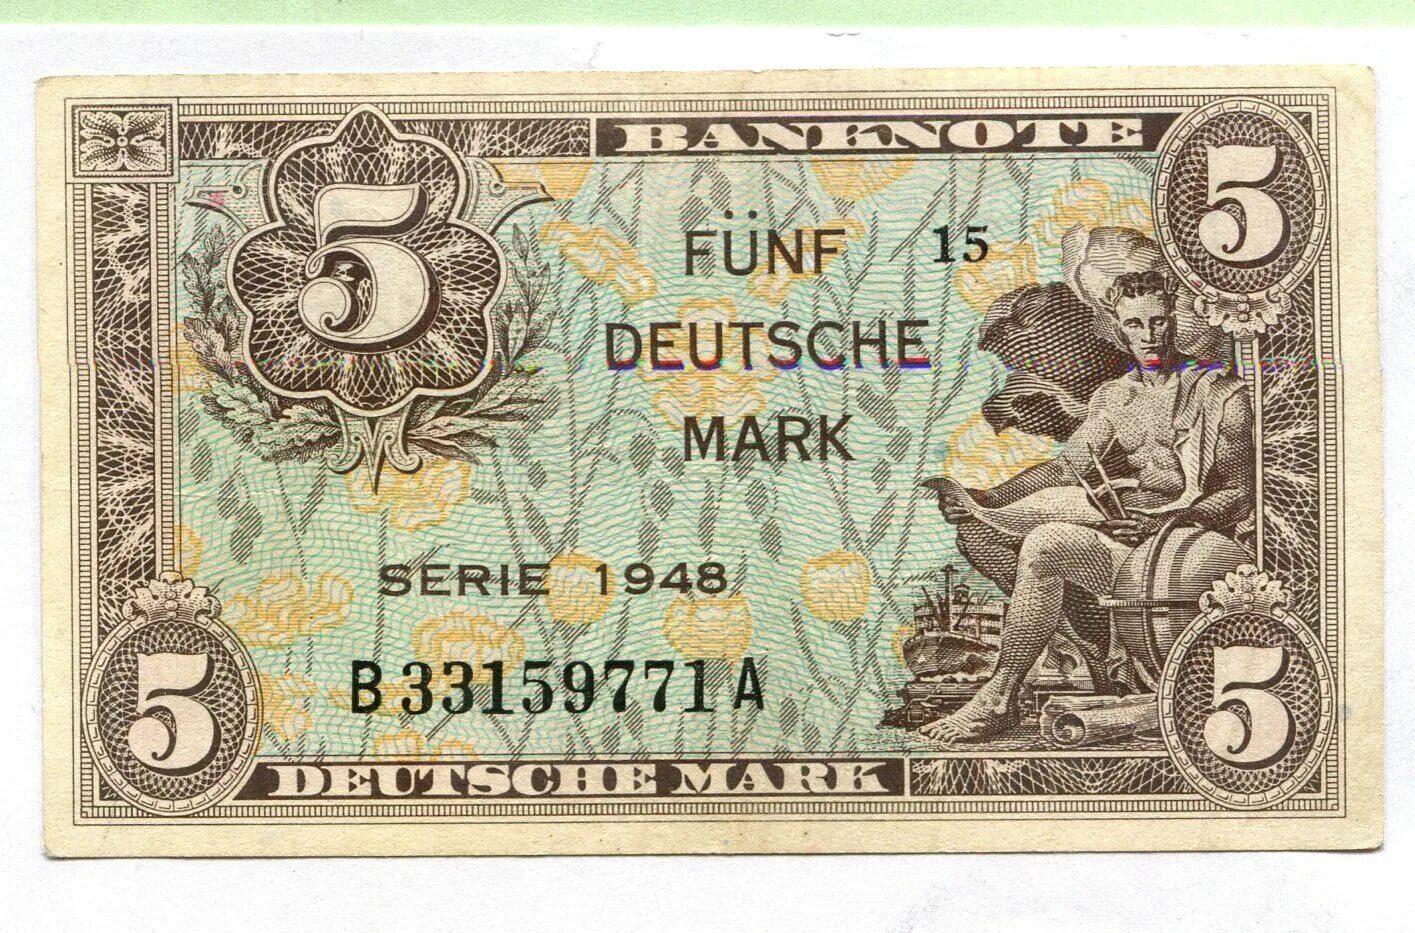 Немецкая марка. Немецкая марка 1948. Немецкая марка банкноты. Немецкая марка (Deutsche Mark).